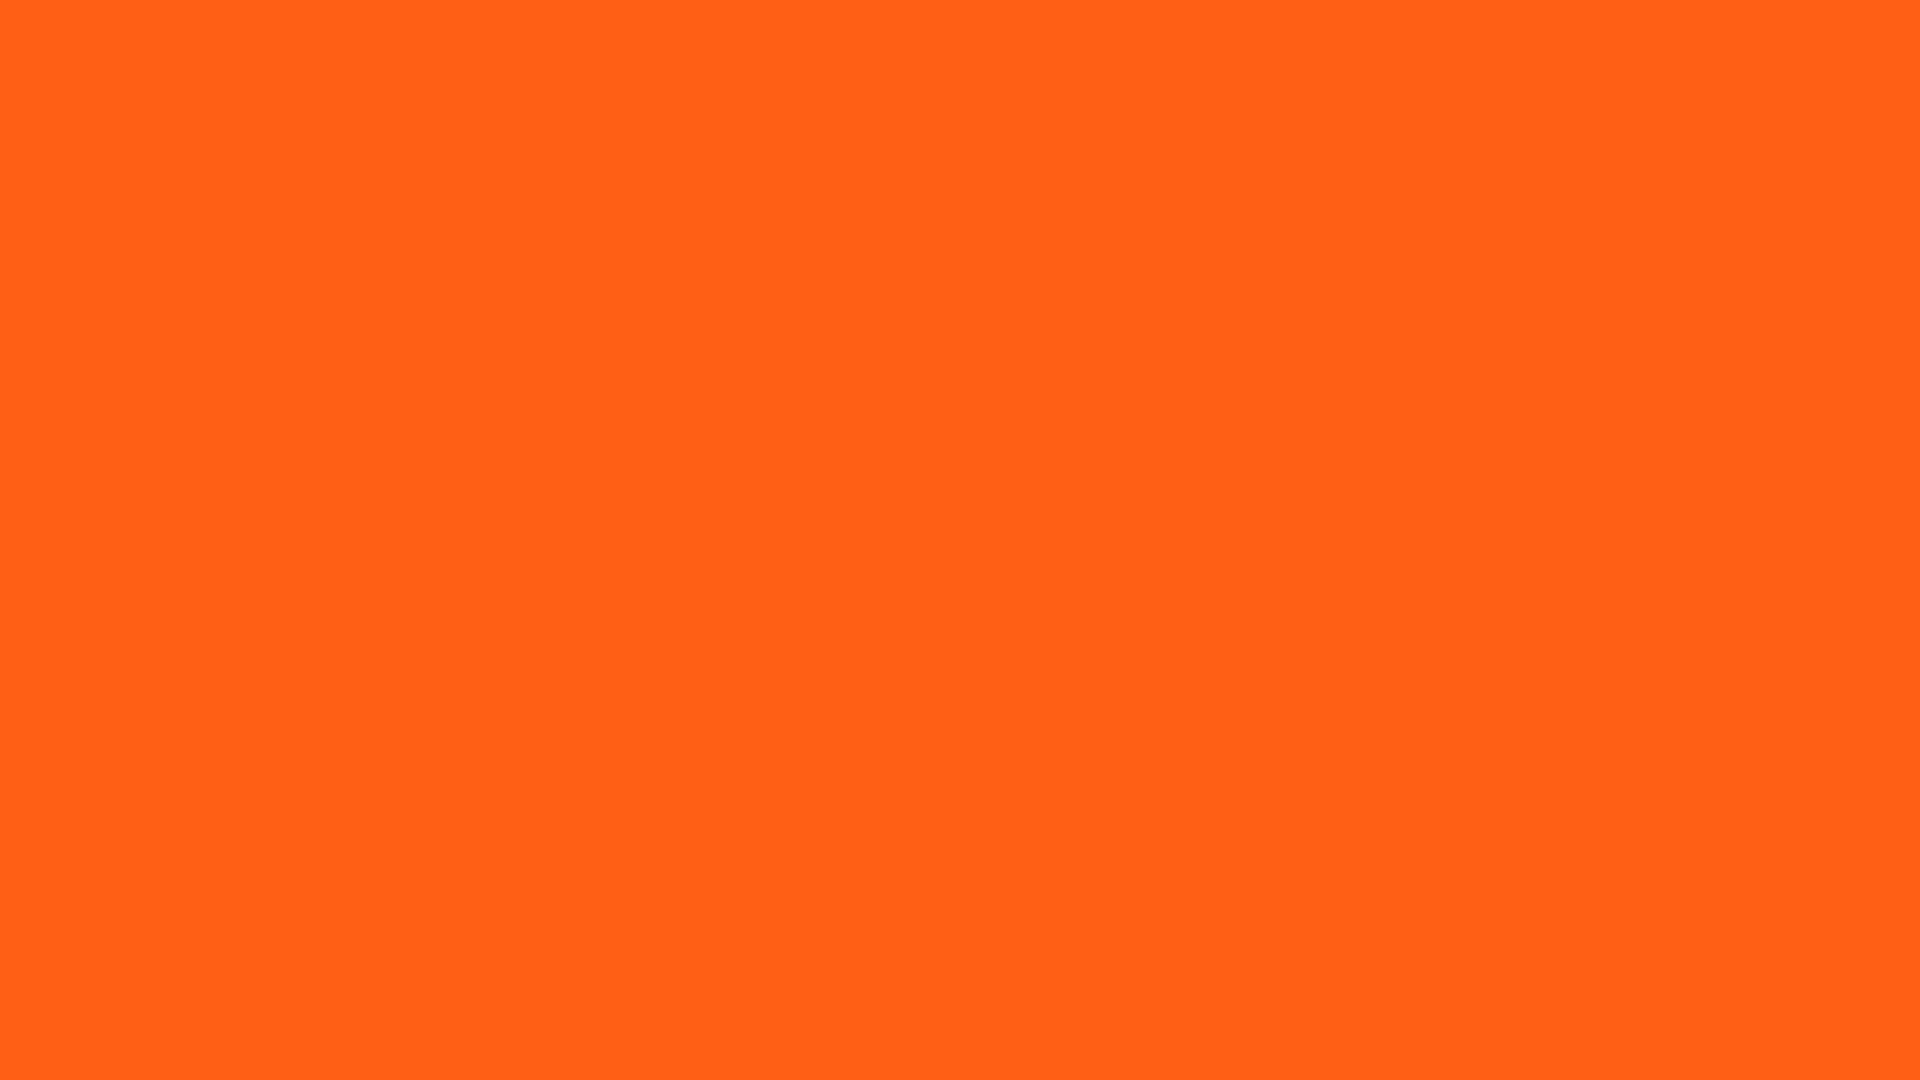 Màu cam an toàn là một màu sắc quan trọng trong đời sống hàng ngày của chúng ta. Nó được sử dụng rộng rãi trong sản xuất để tránh tai nạn hoặc bất kỳ sự cố nào có thể xảy ra. Hãy xem hình ảnh liên quan để hiểu rõ hơn về màu sắc quan trọng này.